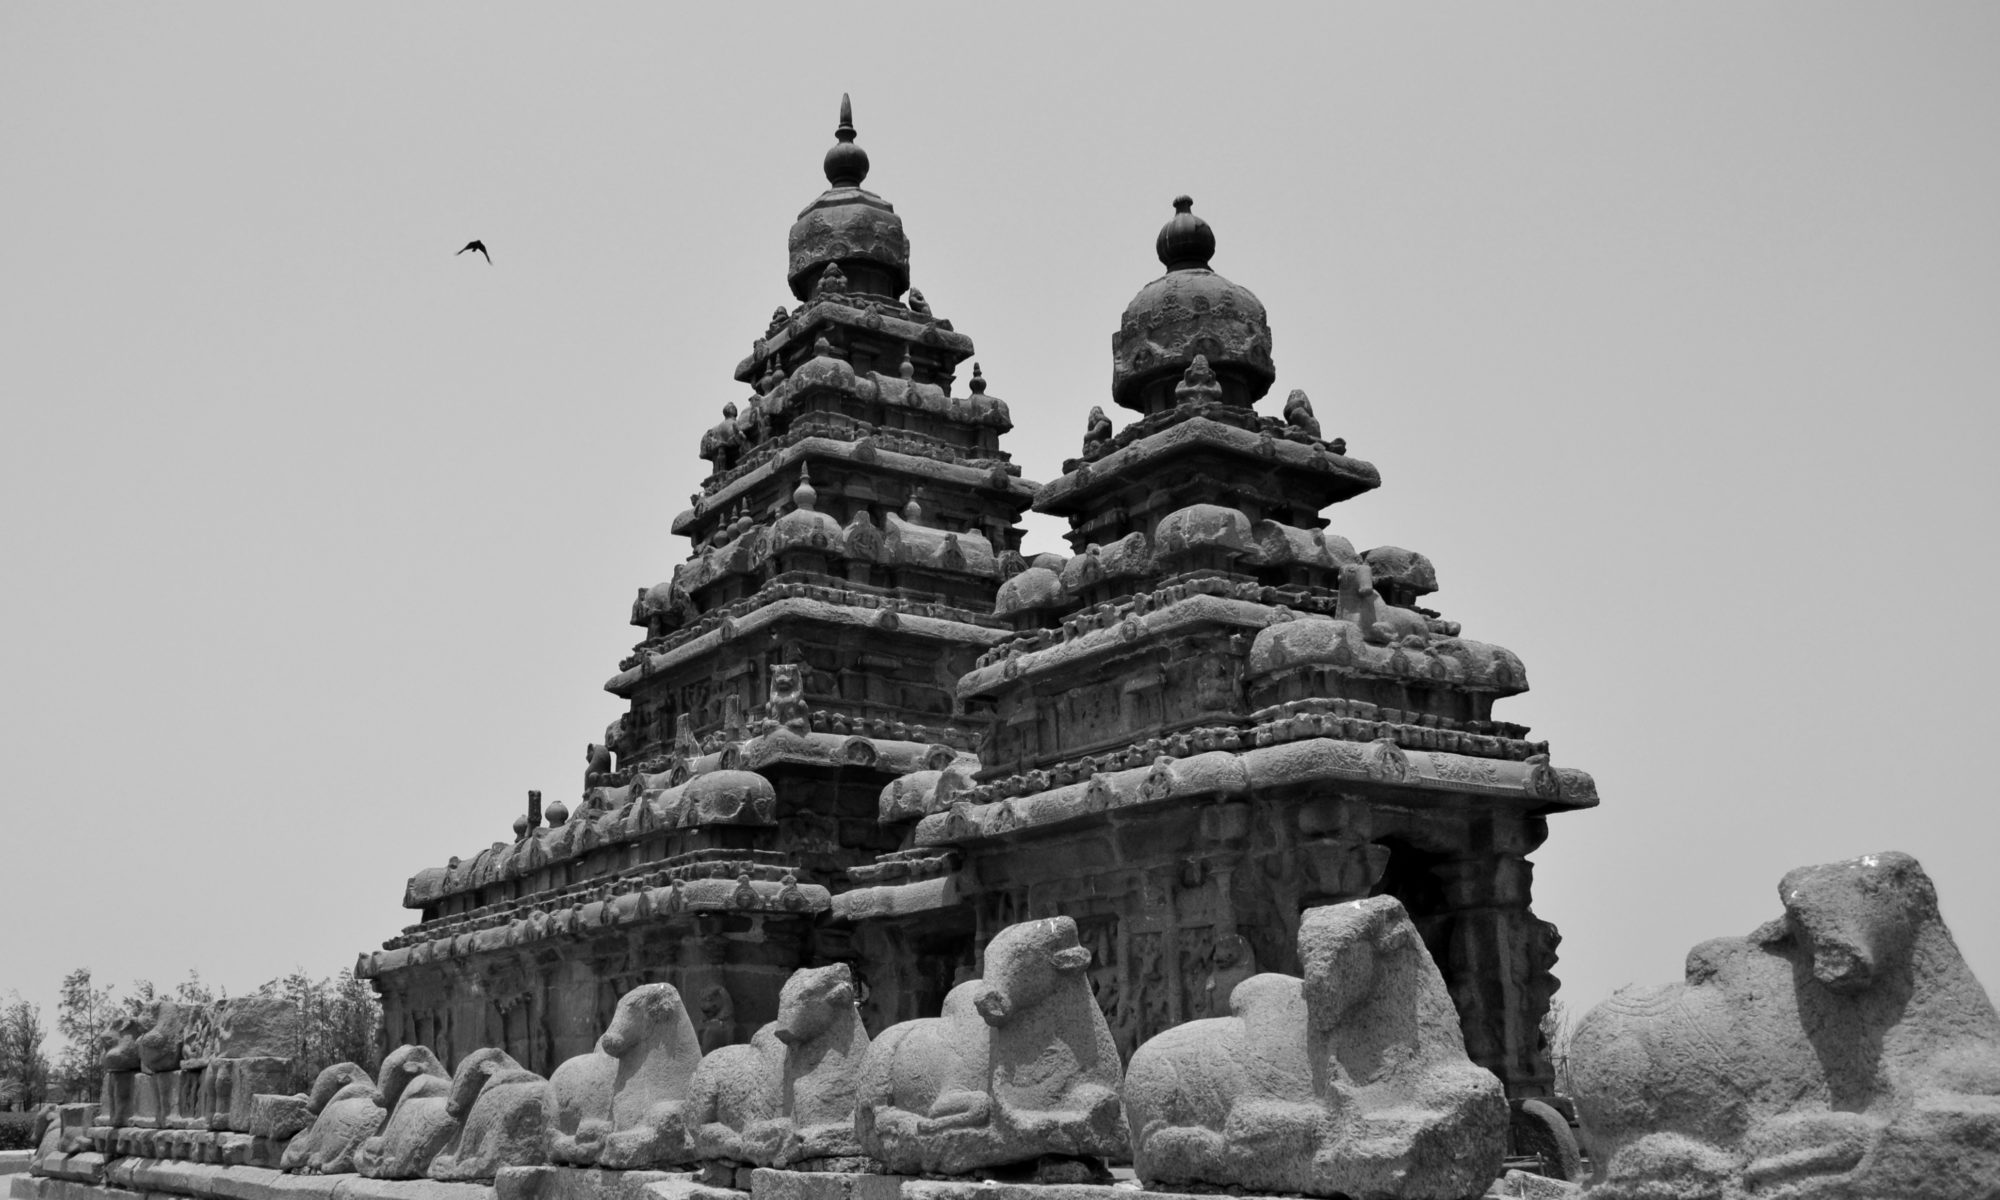 The Shore Temple at Mahabalipuram, Tamil Nadu, India